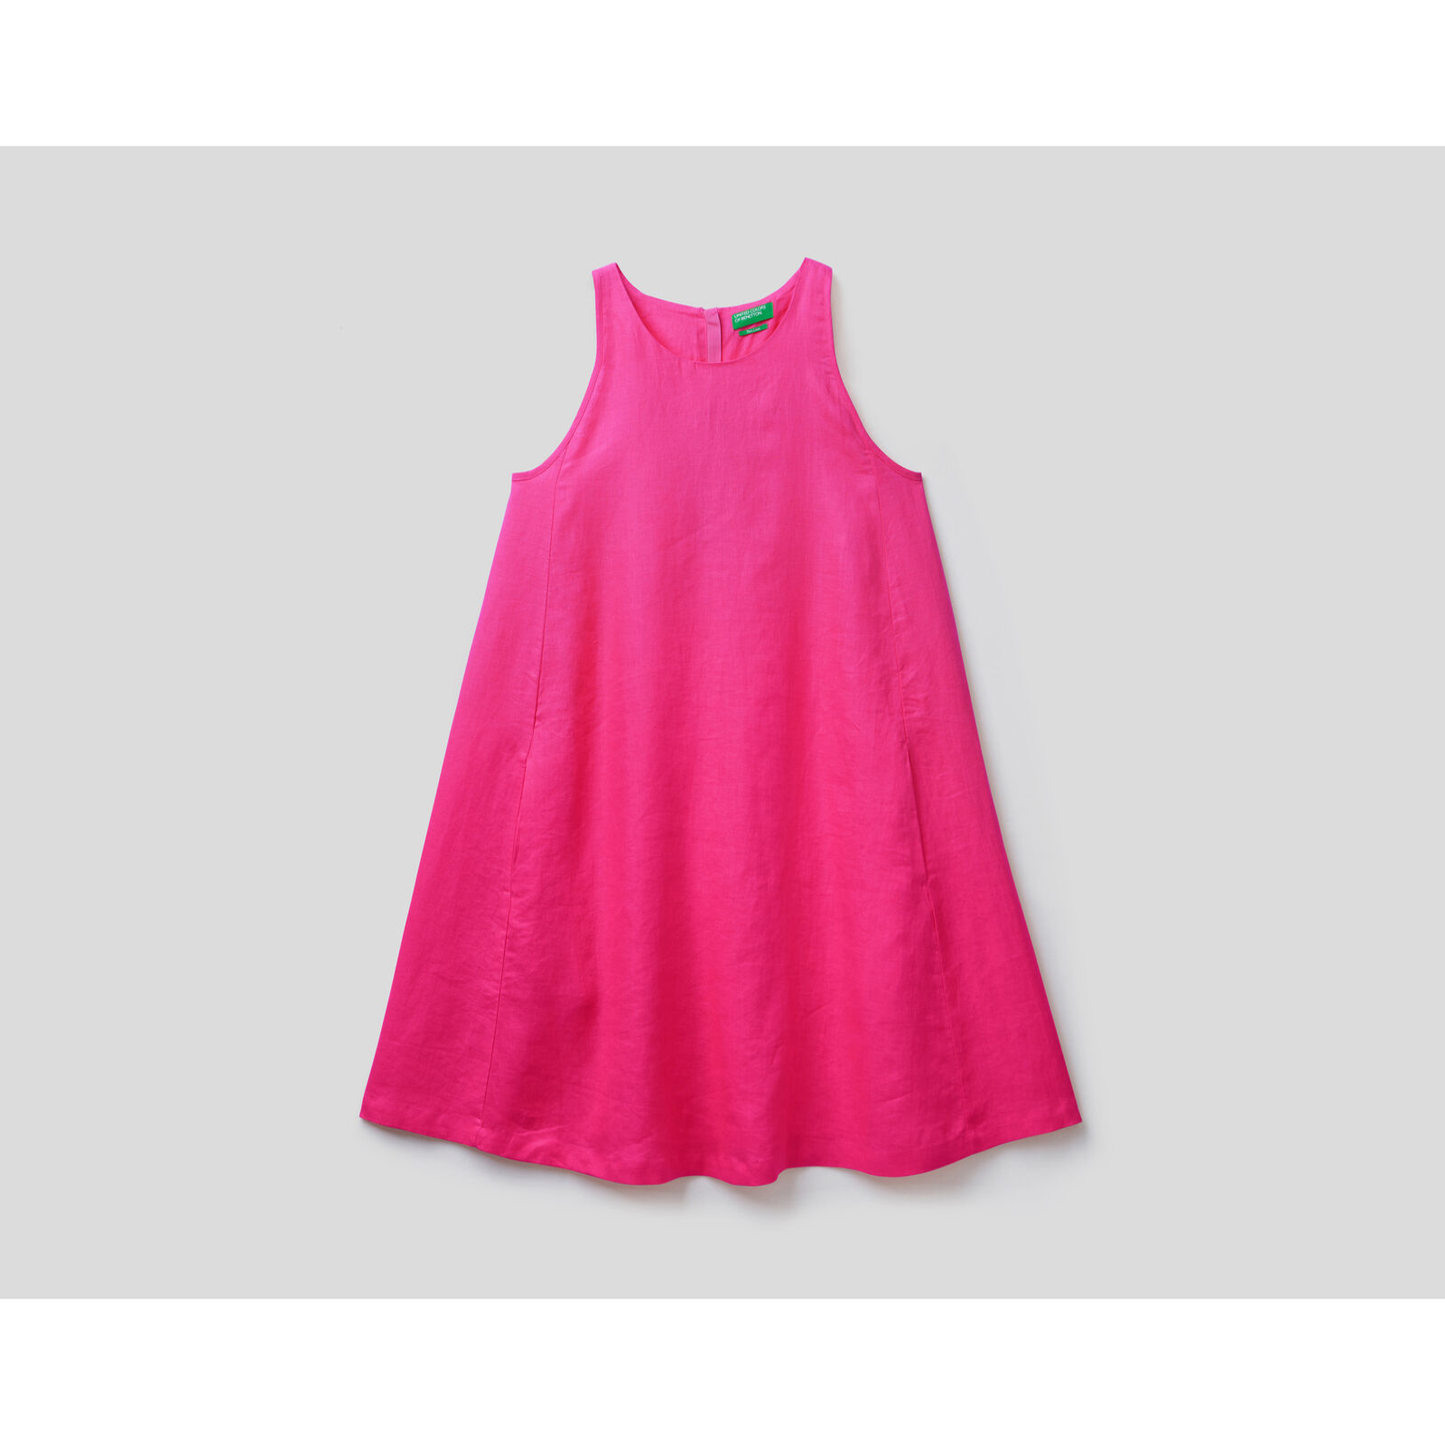 Benetton 100% Linen Sleeveless Dress Hot Pink